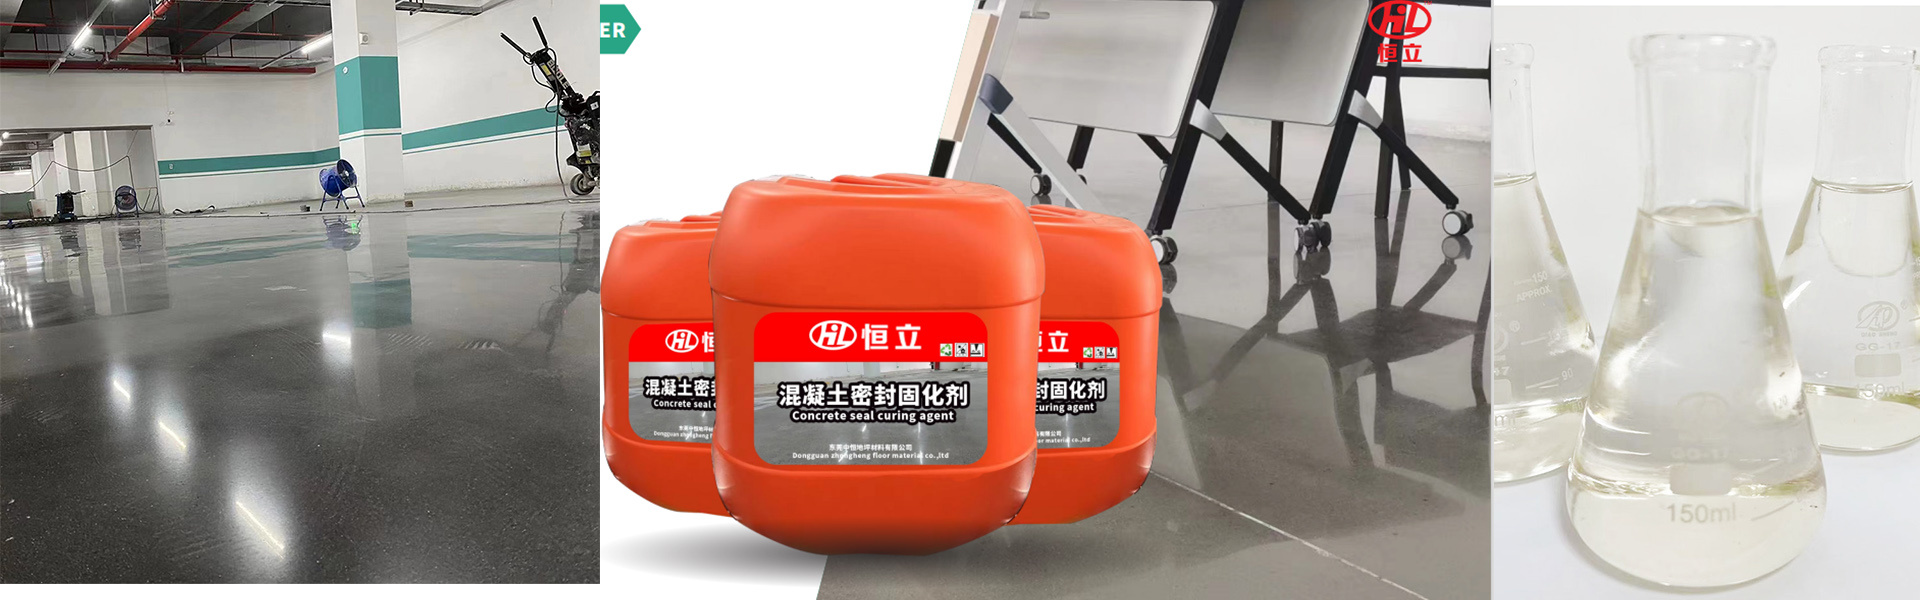 Dongguan Zhongheng Floor Material Co., Ltd.